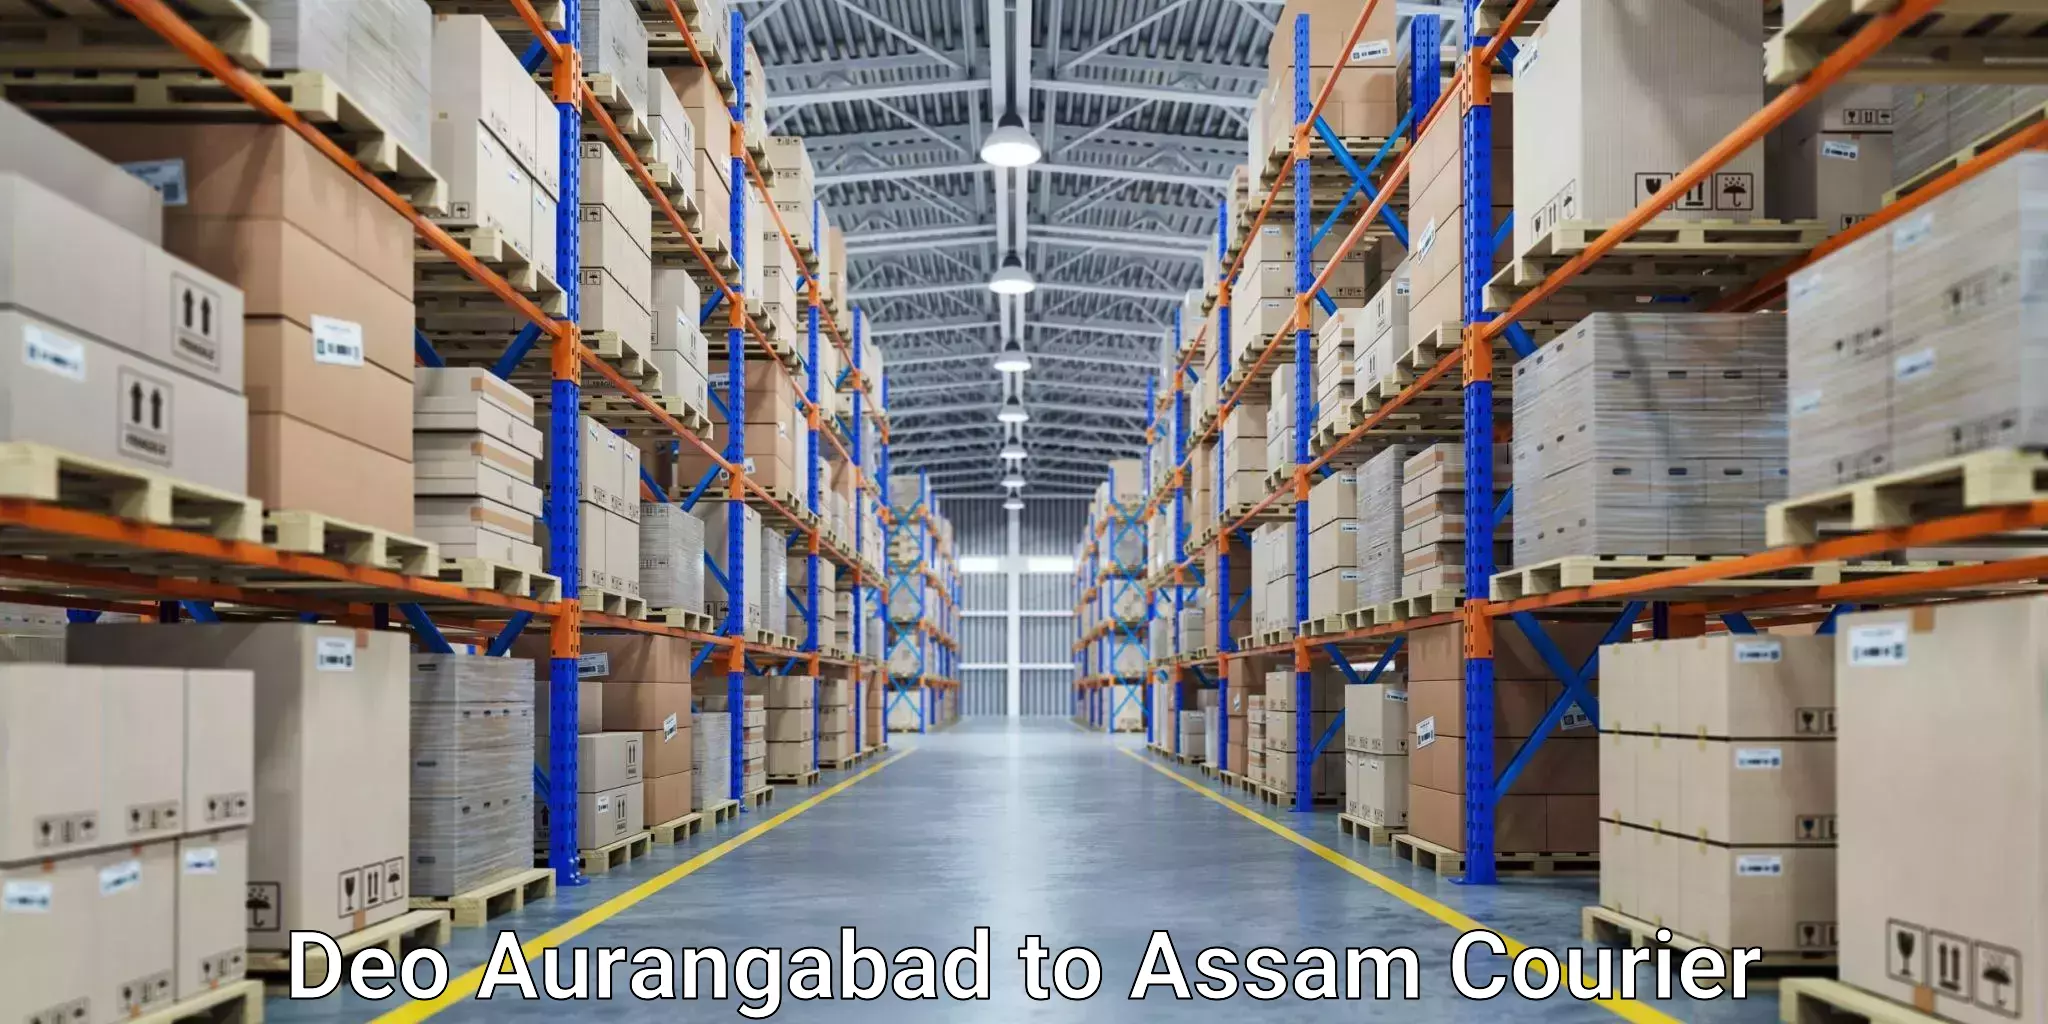 Express package transport Deo Aurangabad to Assam